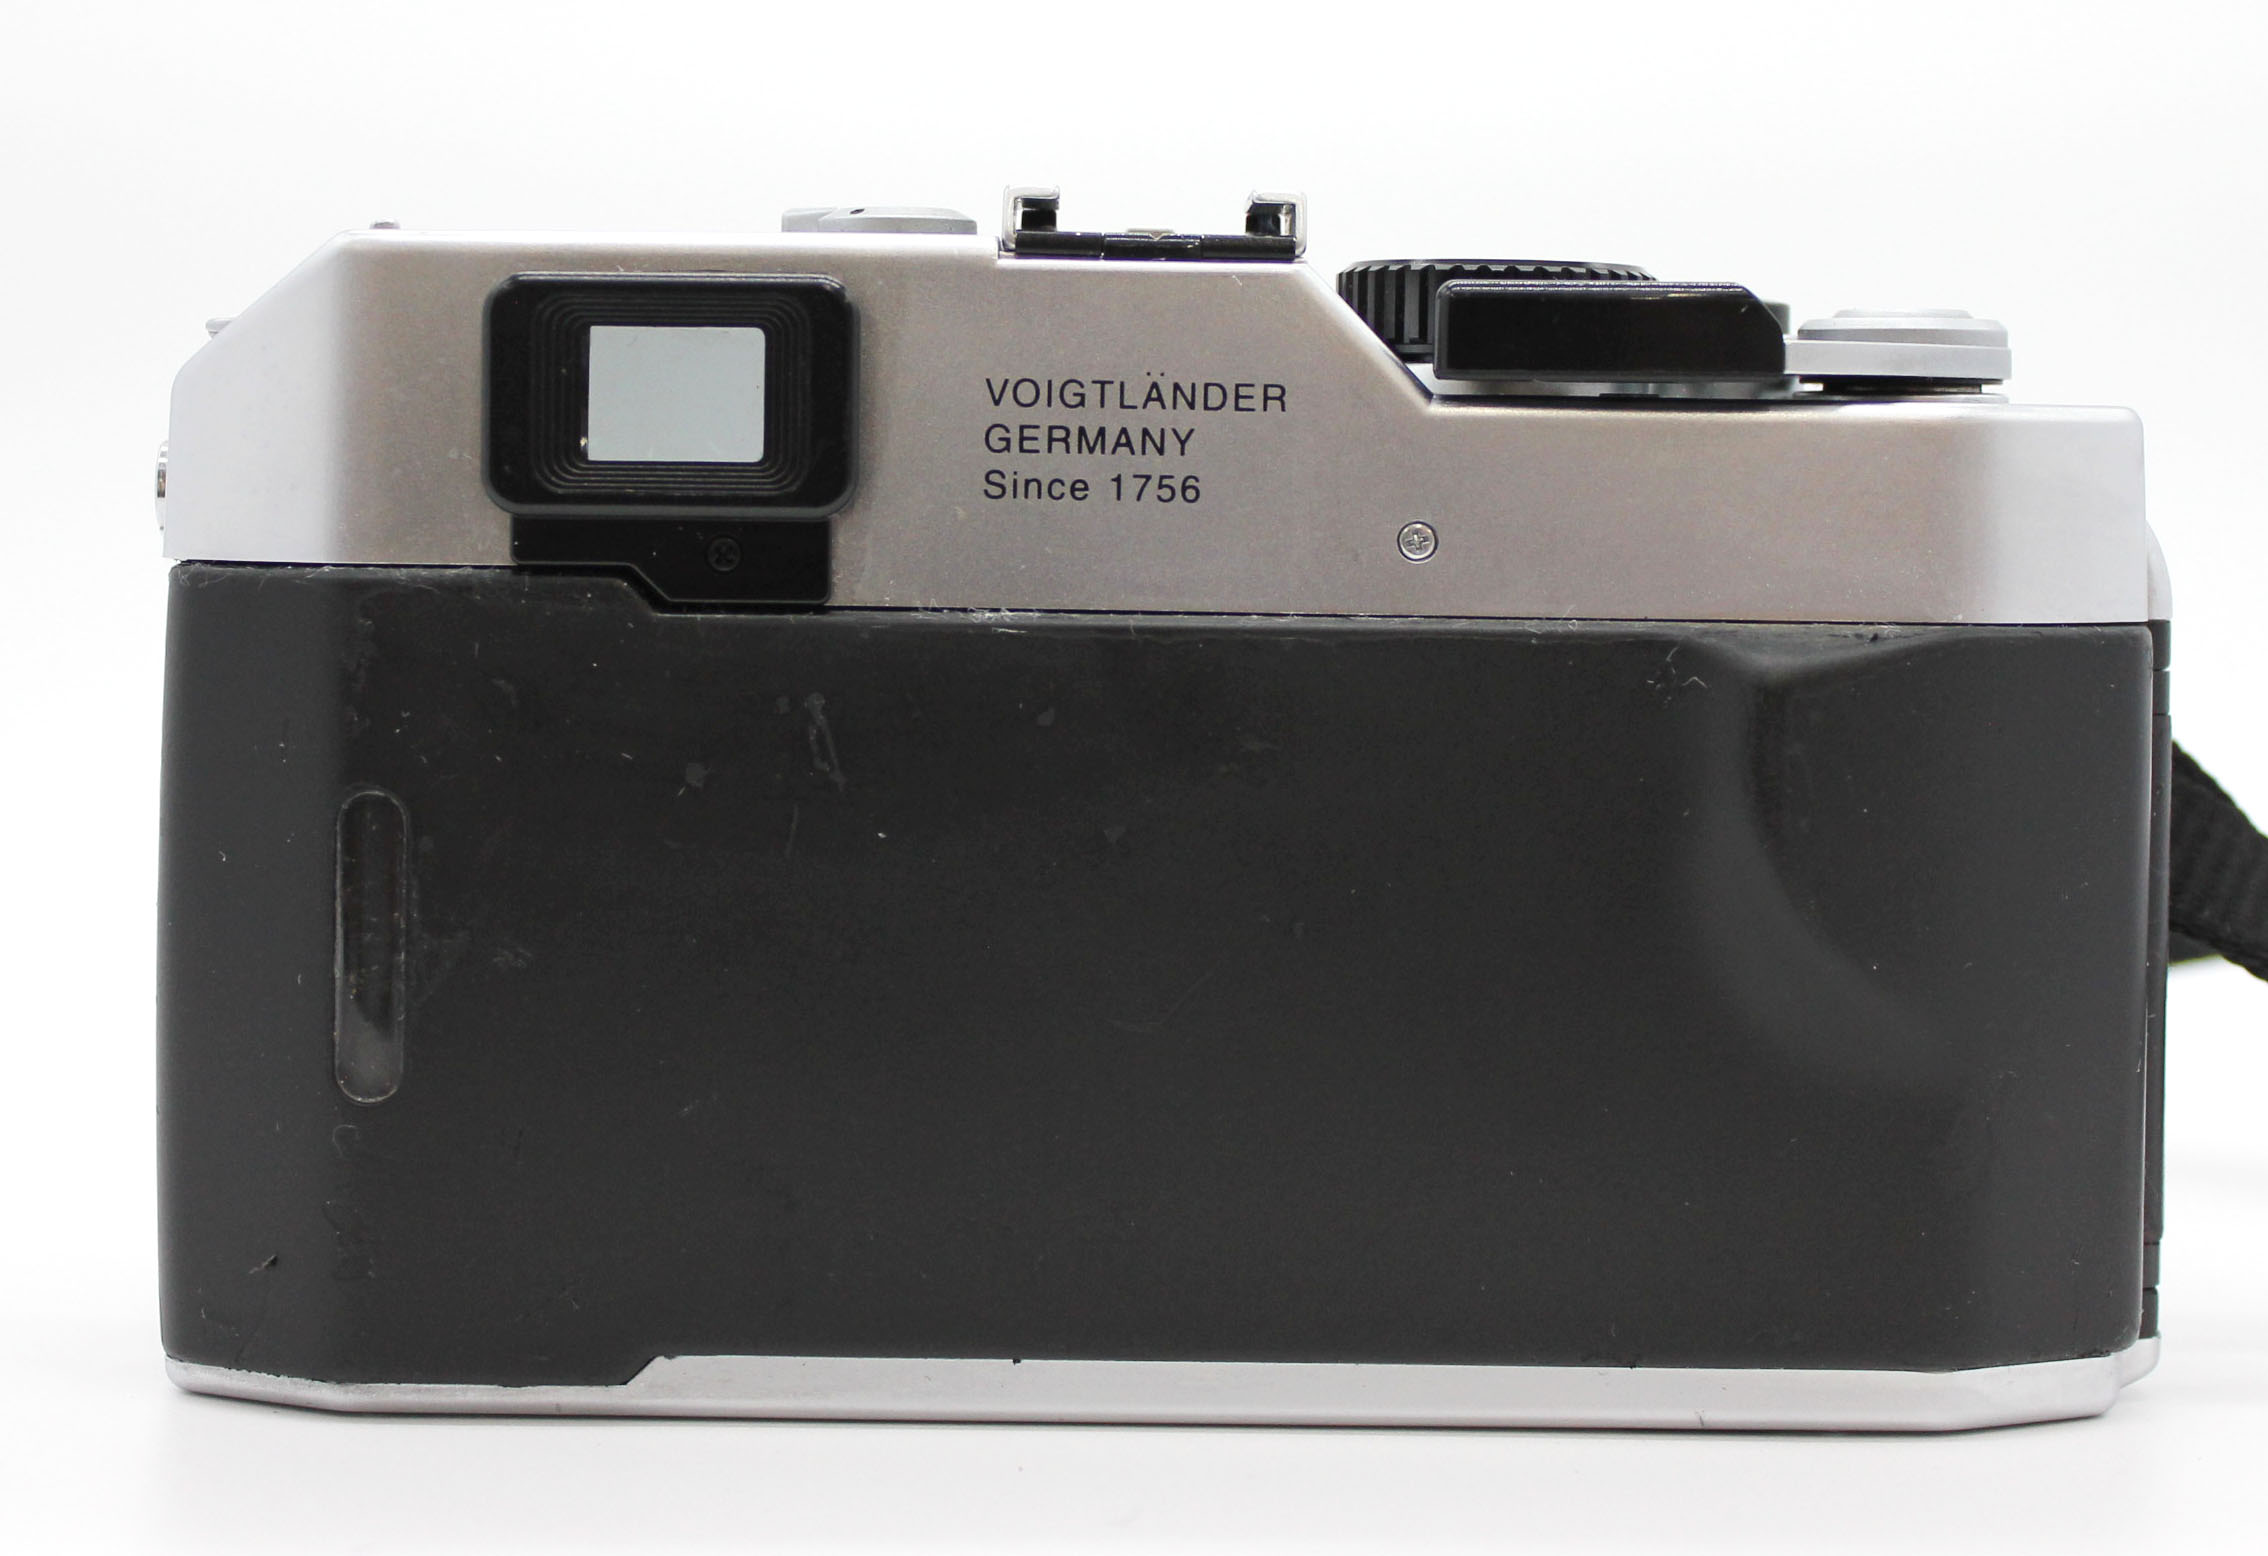  Voigtlander Bessa R Rangefinder 35mm Film Camera L39 LTM from Japan Photo 5